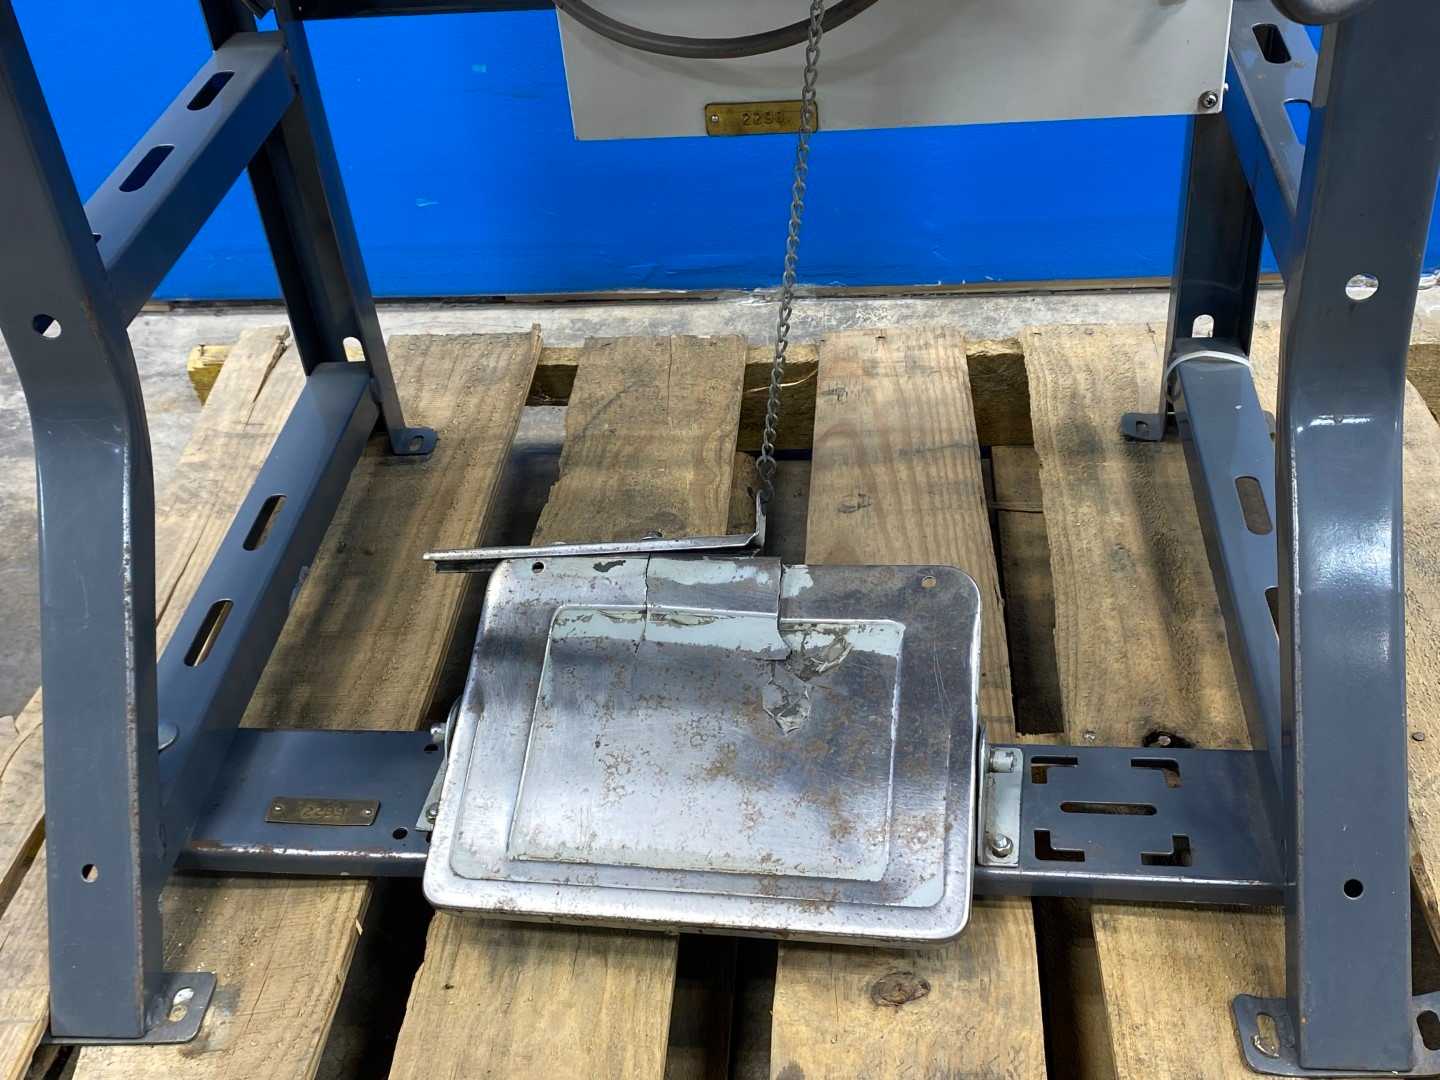 Juki LK-1900HS  heavy weight bartack industrial machine (FOR PARTS)